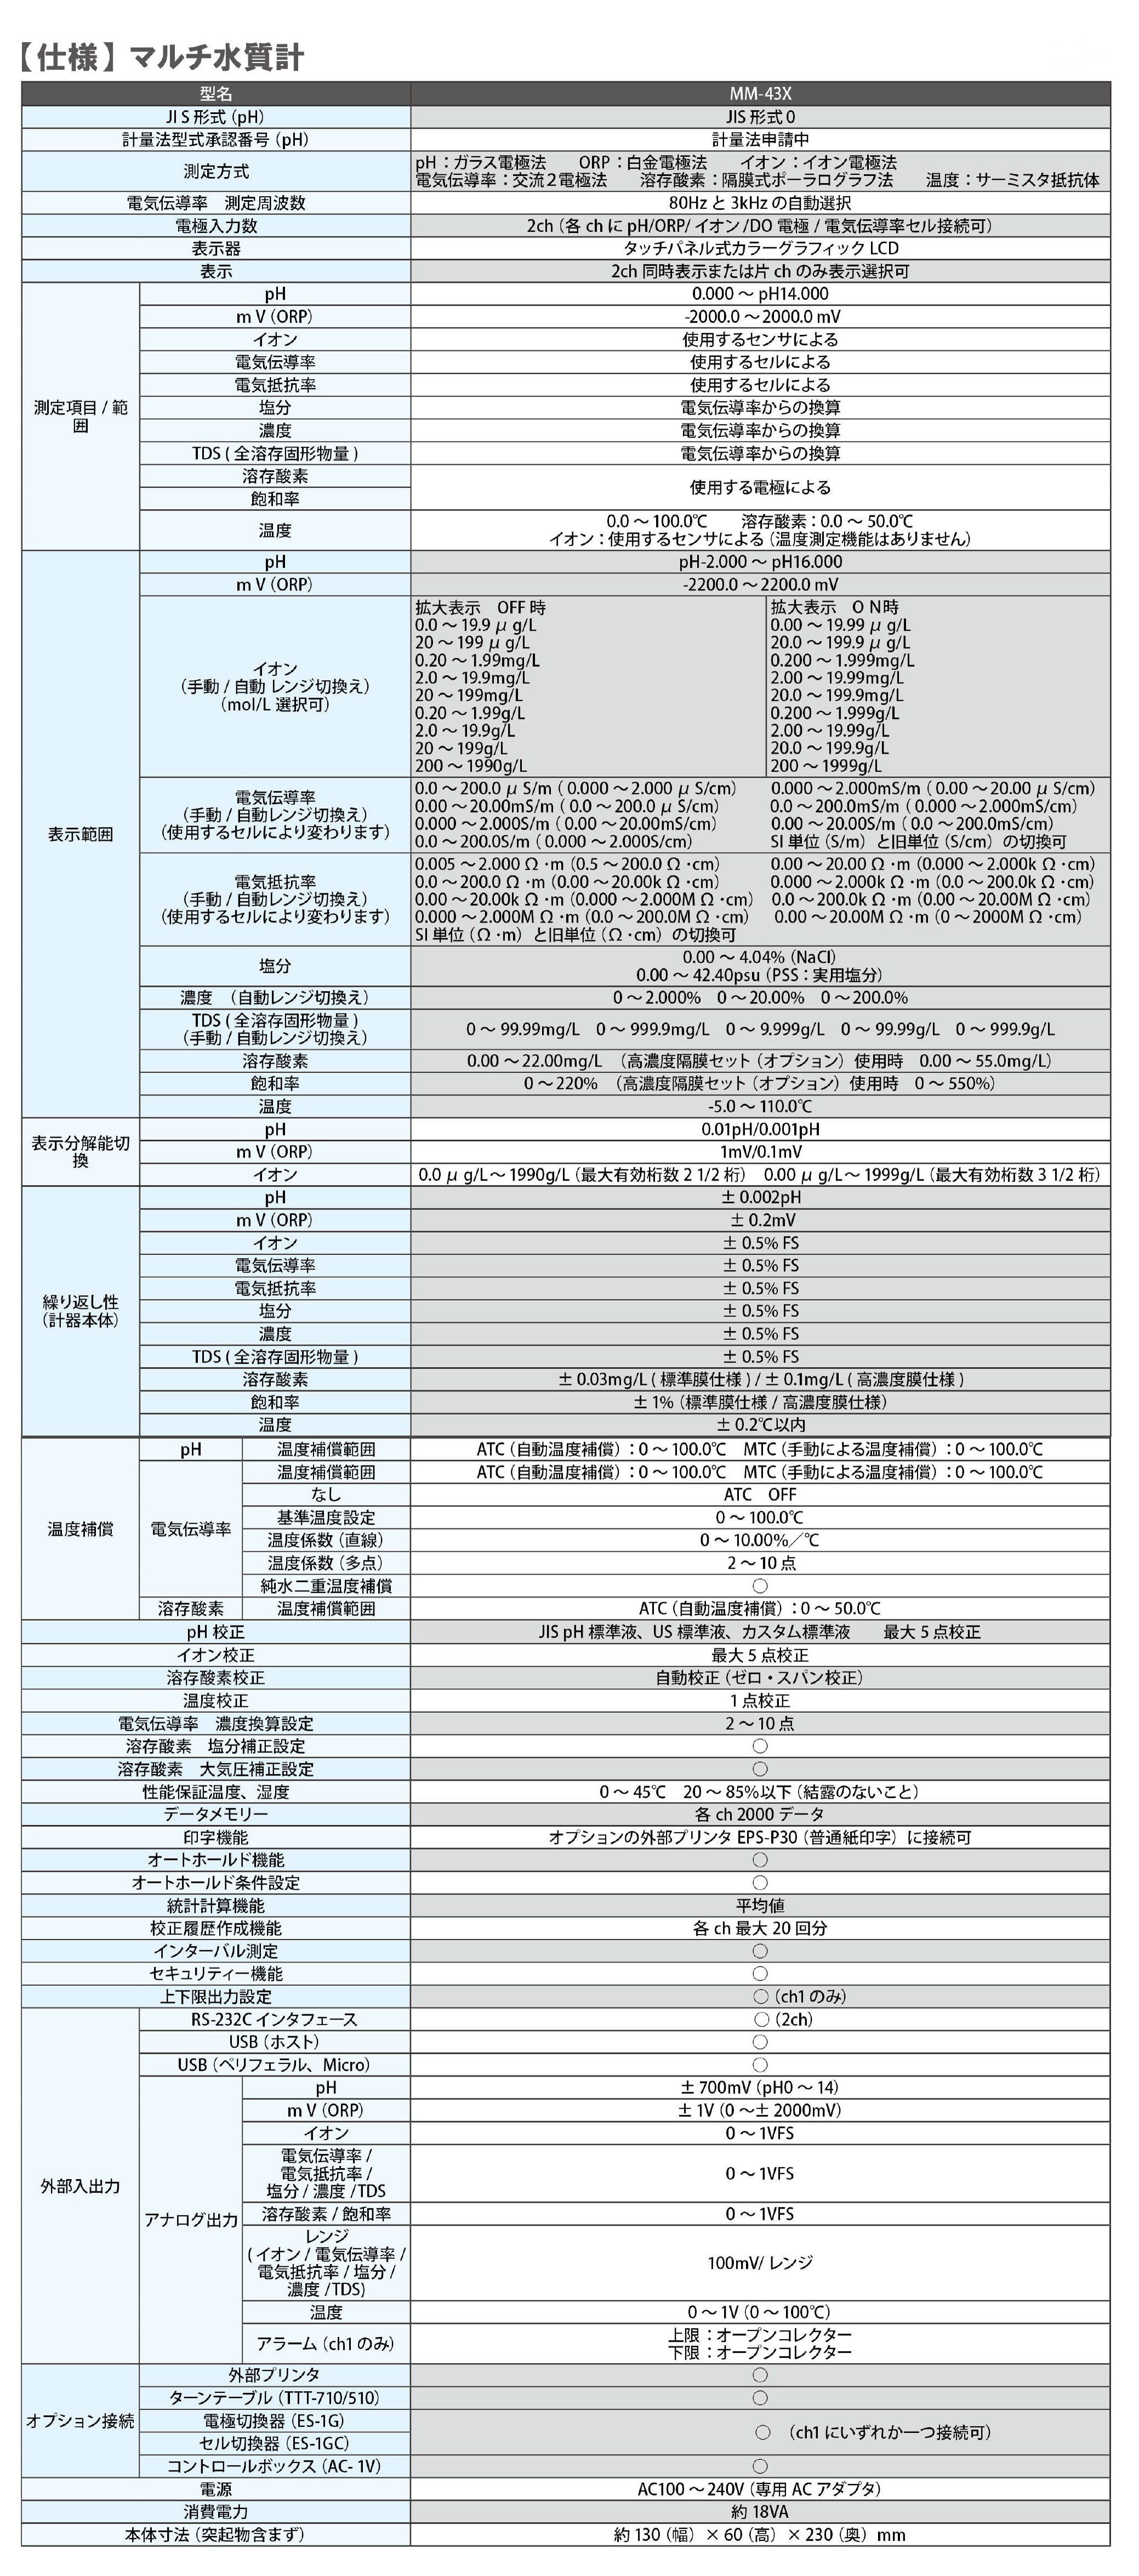 高速配送 生活計量 ライフスケール 東亜ディーケーケー pHメータ HM-20J